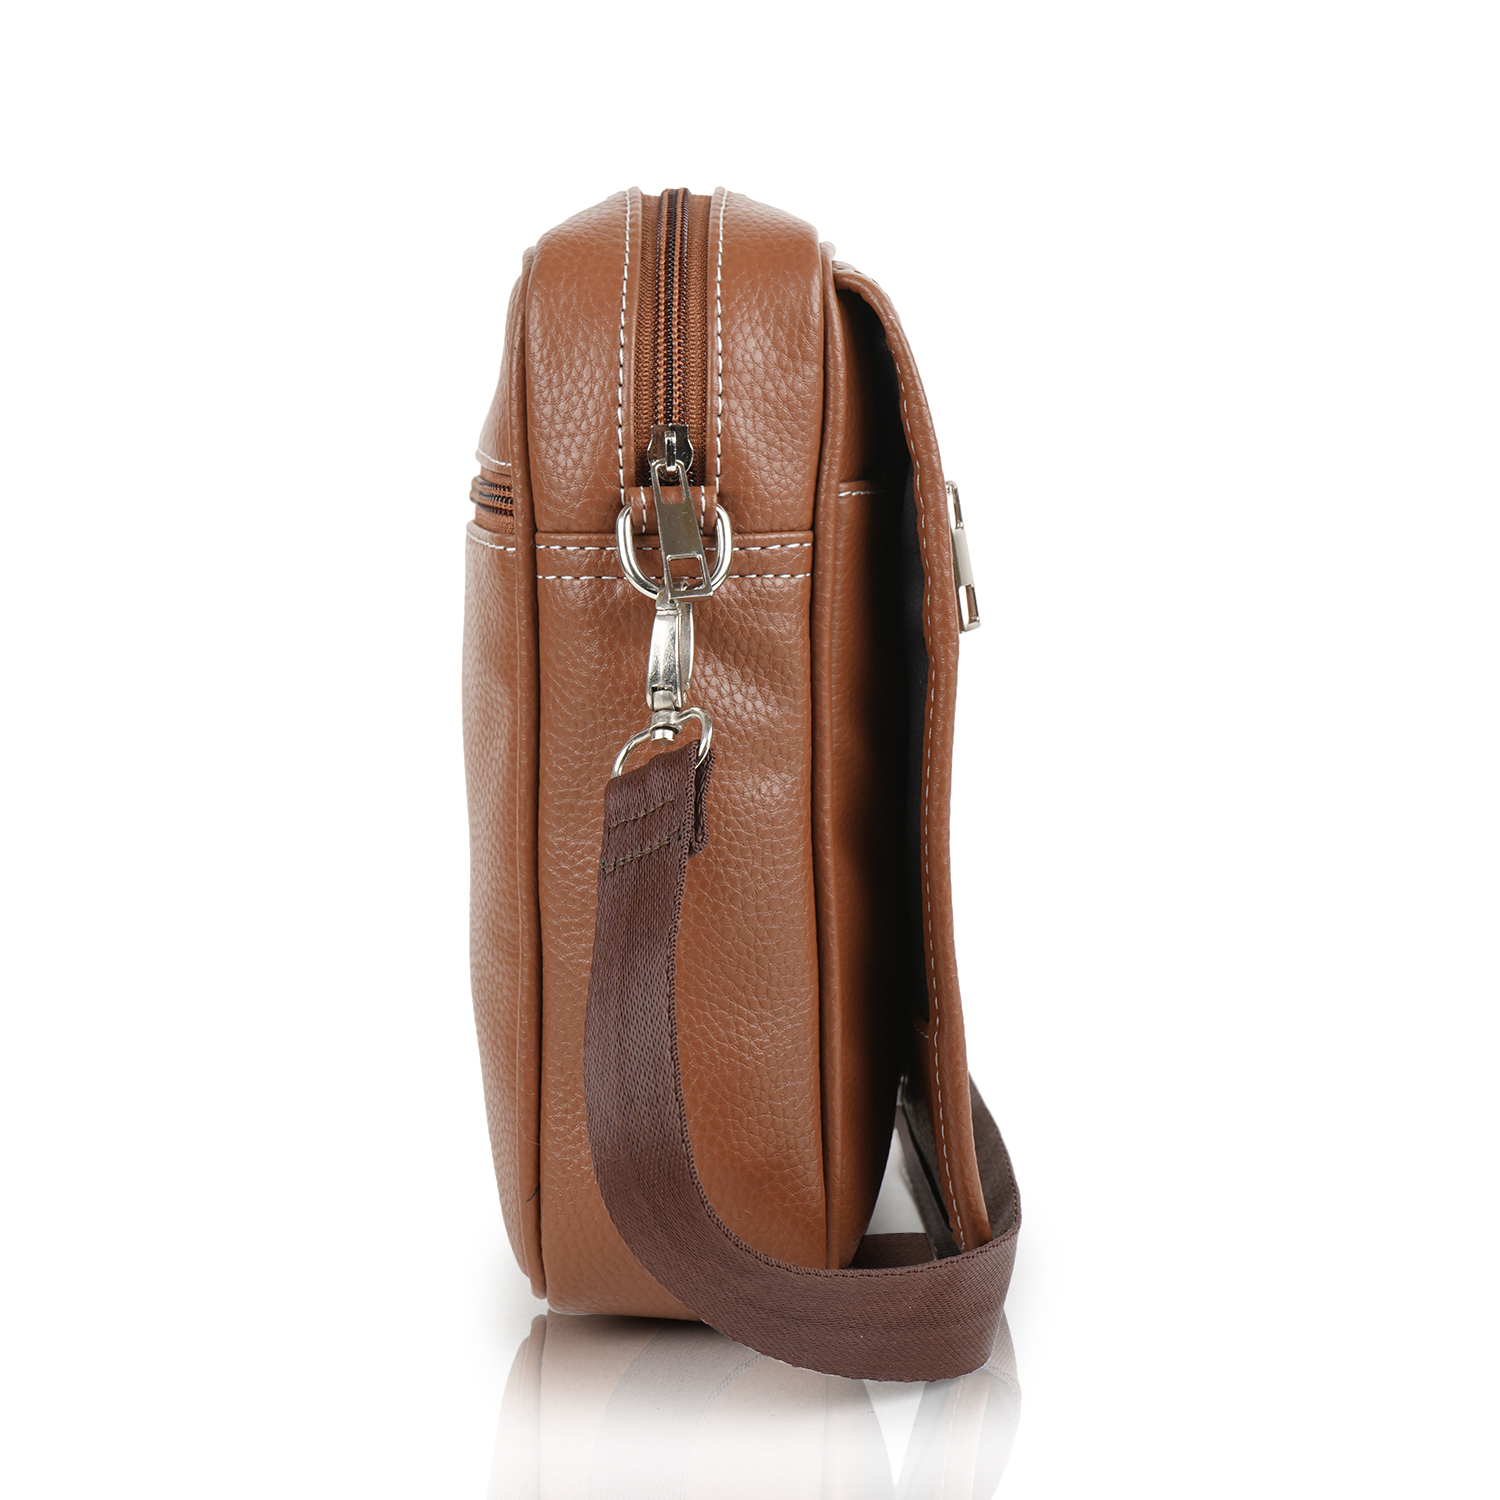 Portable Mobile Sling Bag For Women